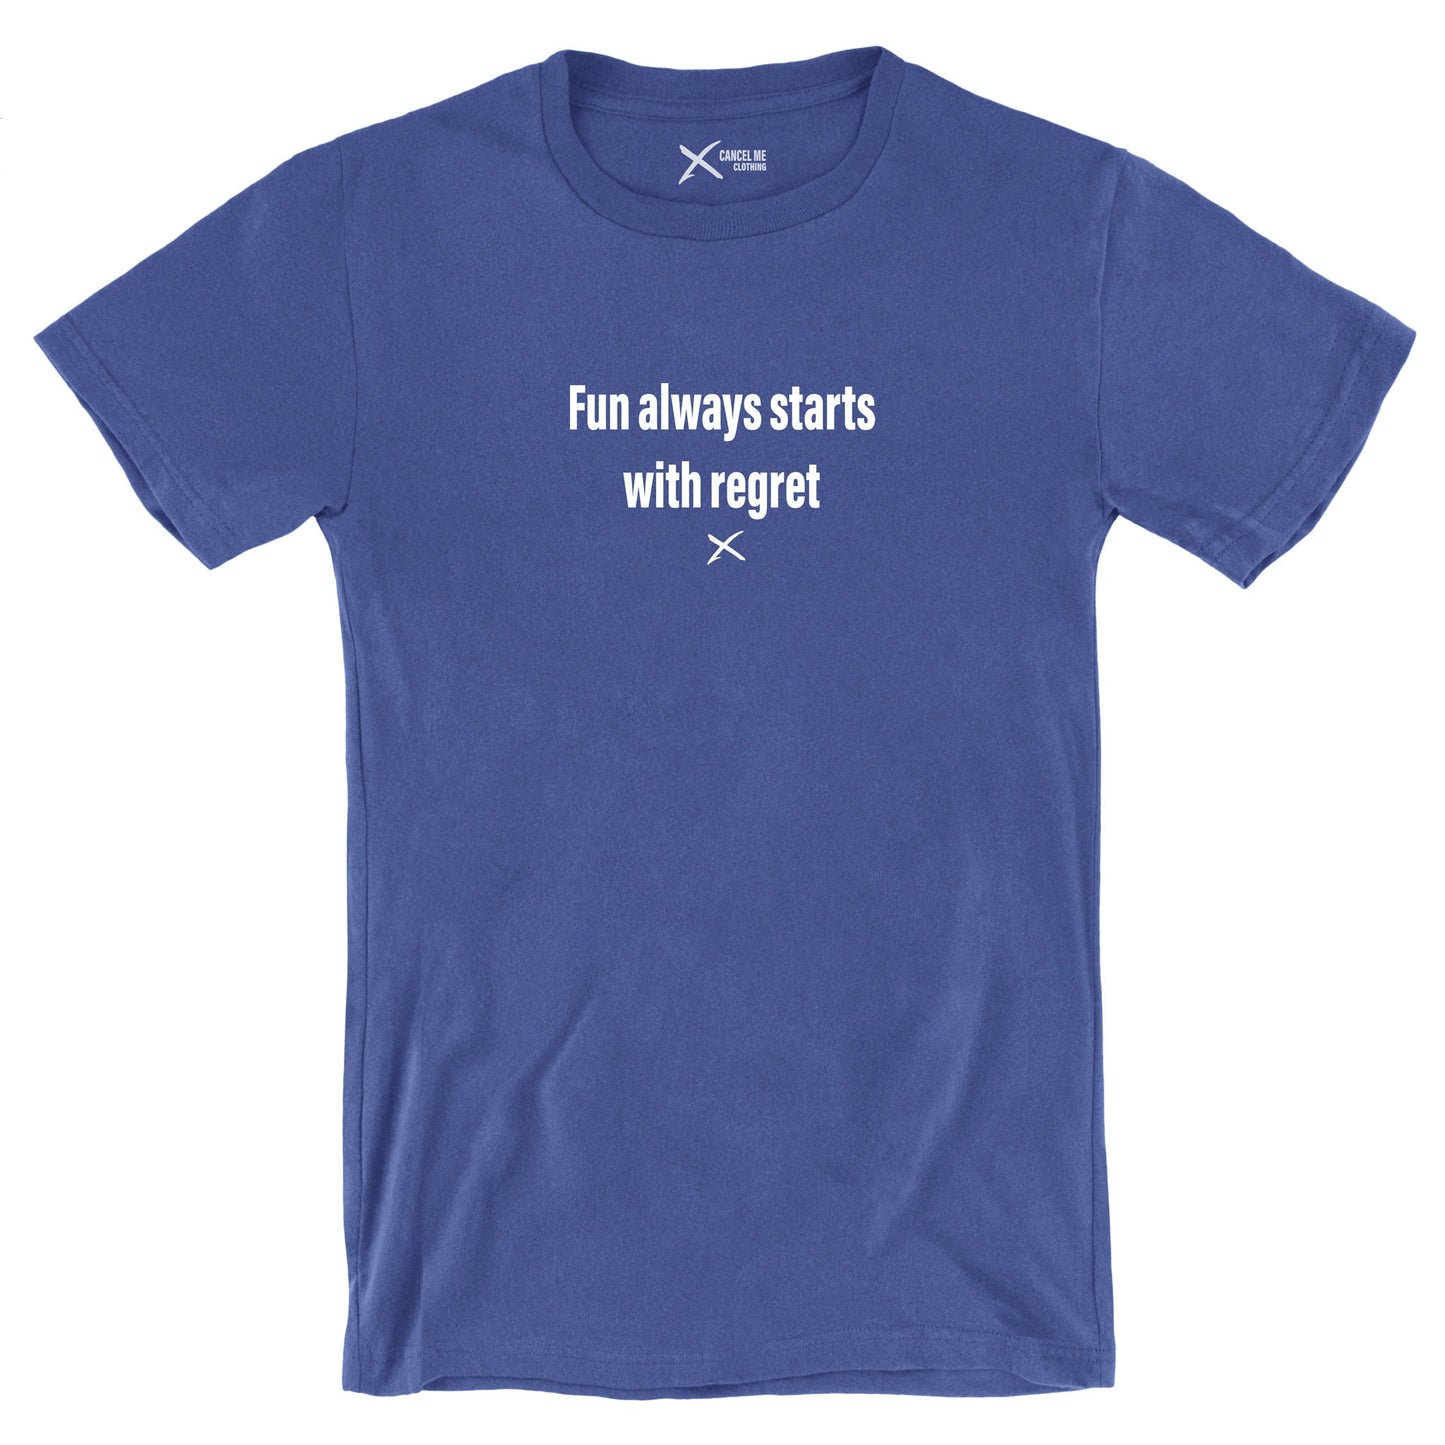 Fun always starts with regret - Shirt